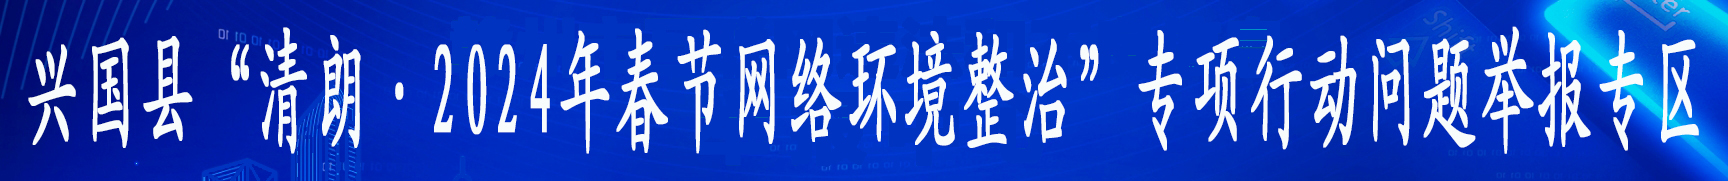 兴国县“清朗·春节网络环境整治”举报专区